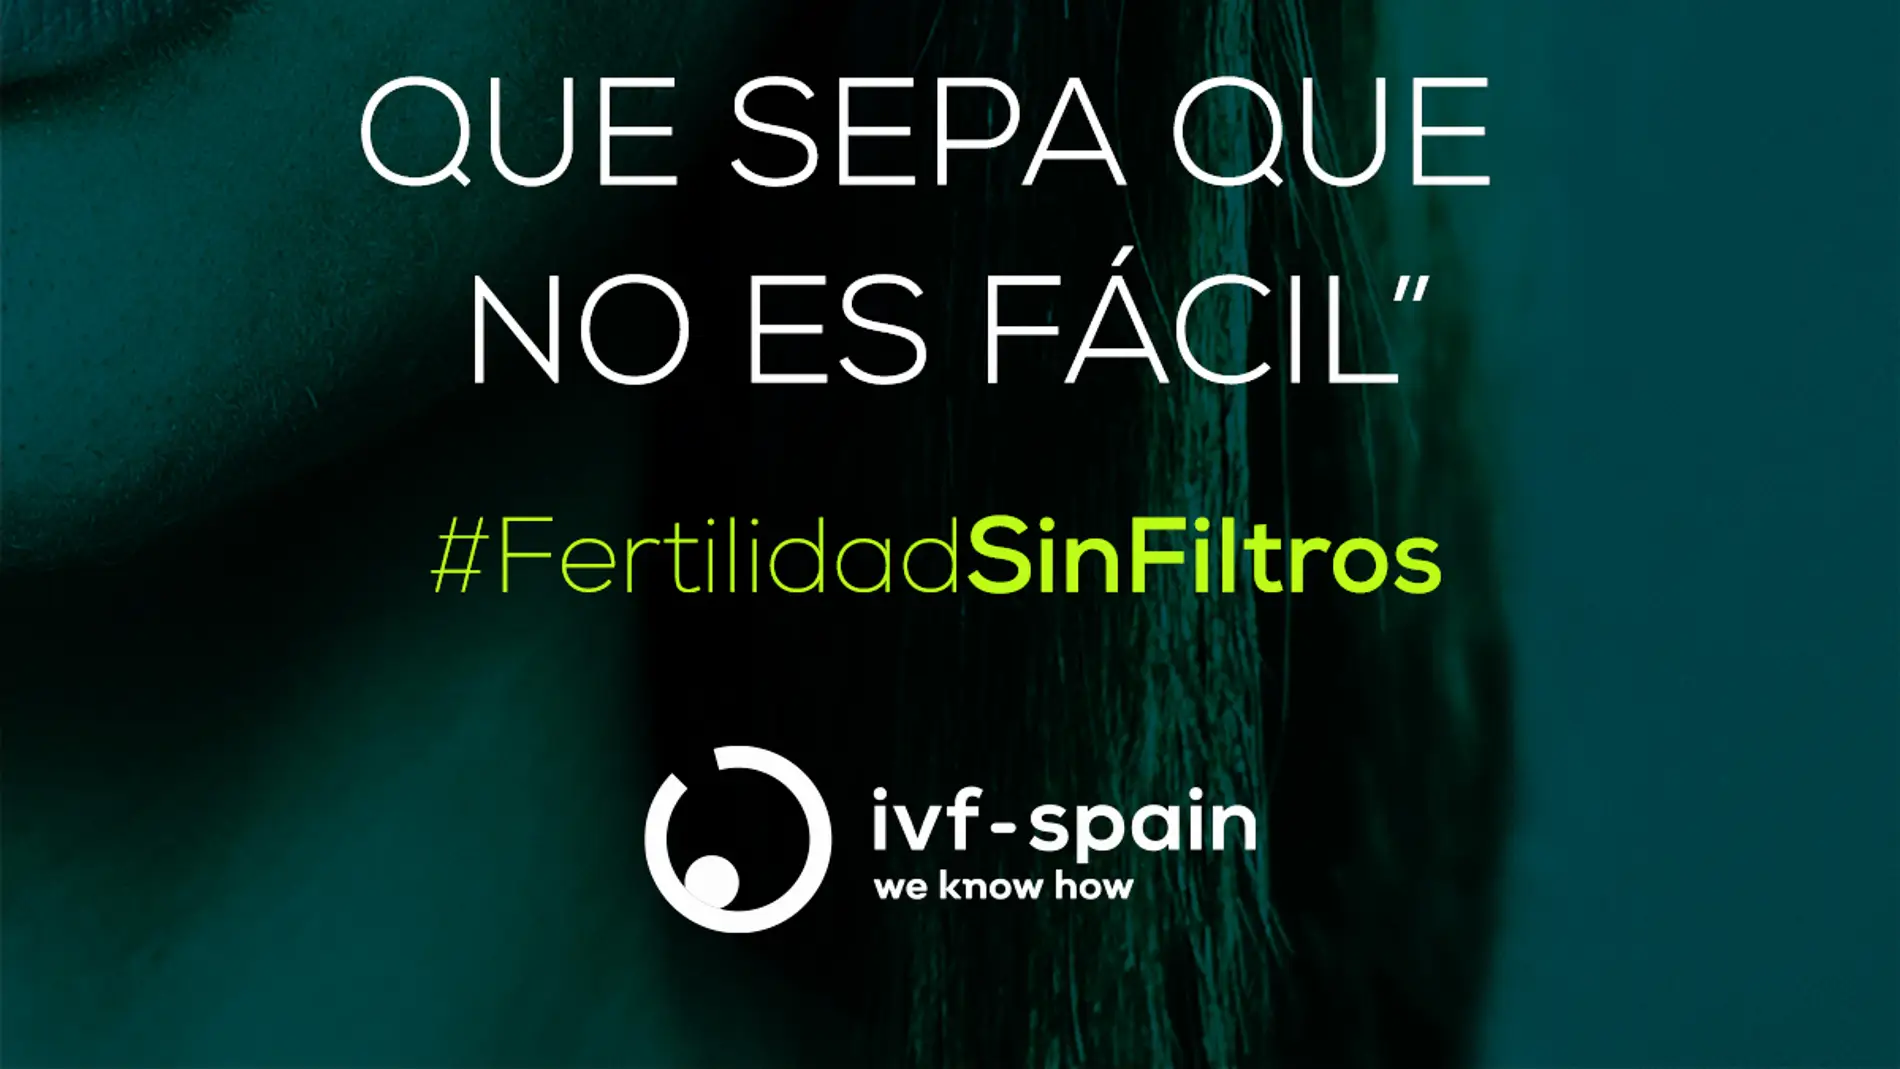 IVF-Spain rompe los estigmas de la fertilidad.